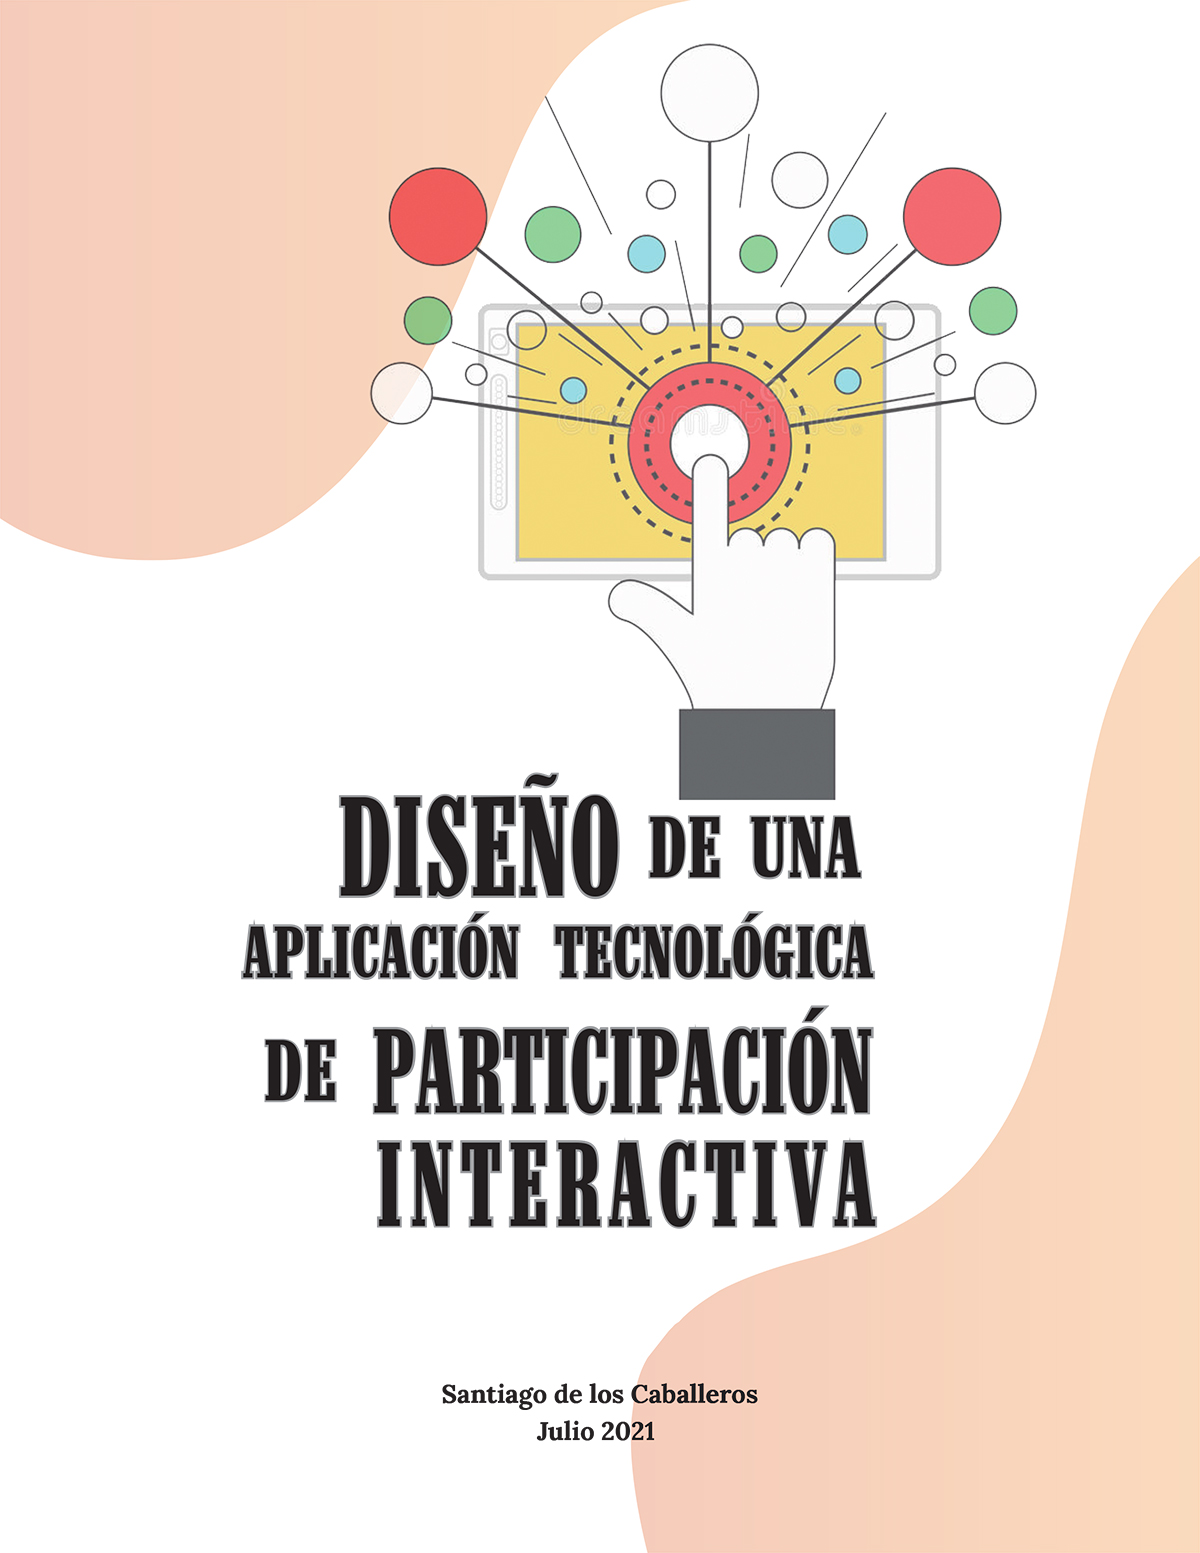 Diseño de una Aplicación Tecnológica de Participación Interactiva, Julio 2021